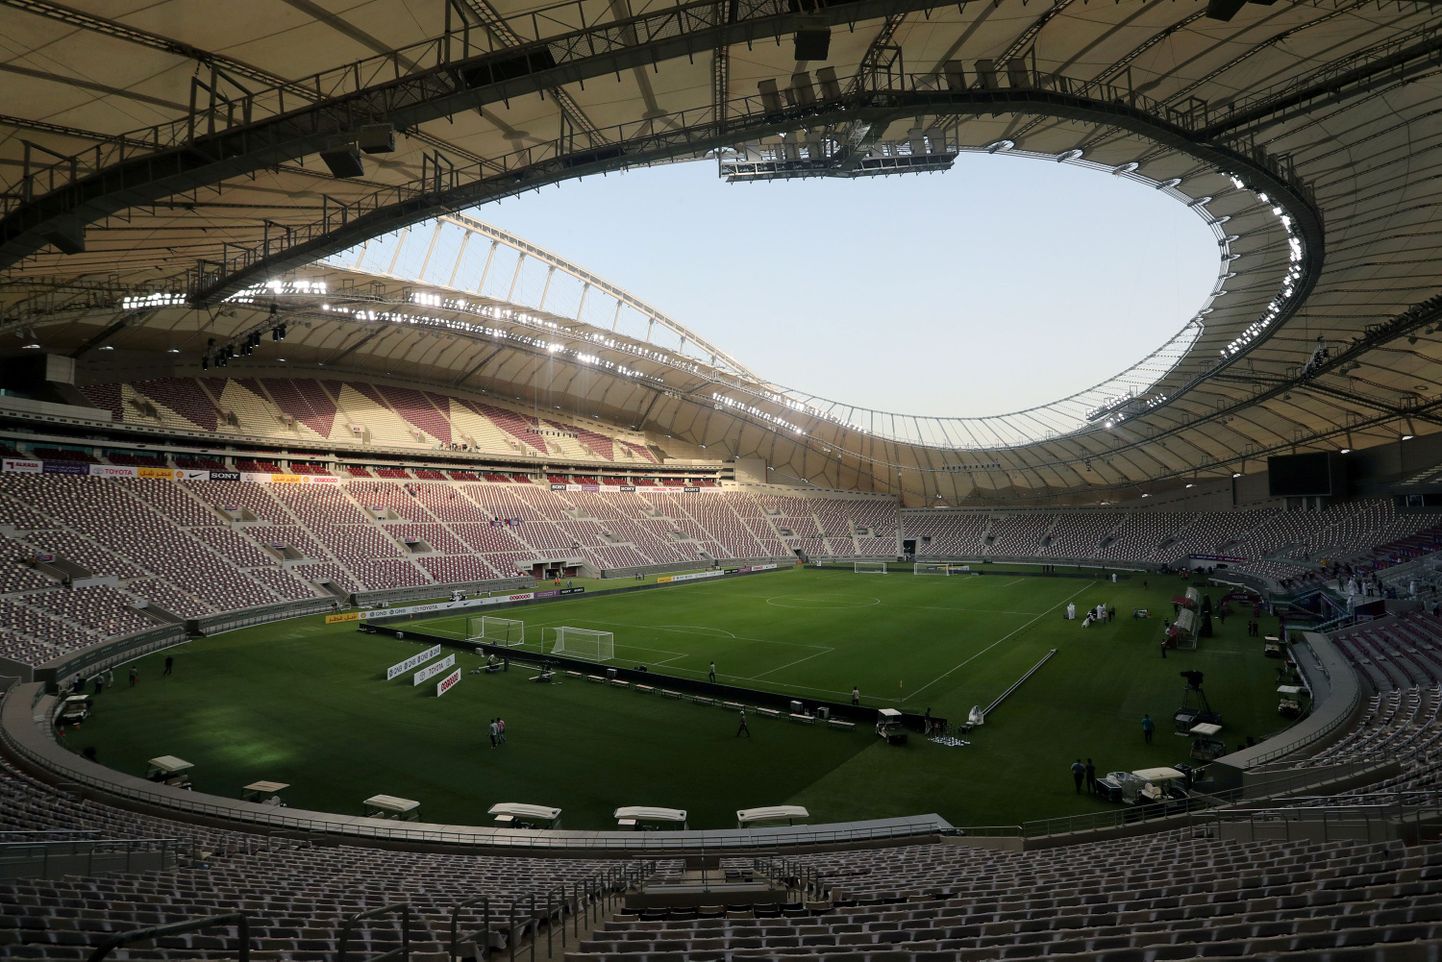 Khalifa rahvusvaheline staadion Katari pealinnas Dohas peaks viie aasta pärast võõrustama jalgpalli MM-finaalturniiri mänge. Katari ja tema naabrite vahel puhkenud diplomaatiline kriis seab aga suurvõistluse toimumise kohale küsimärke.